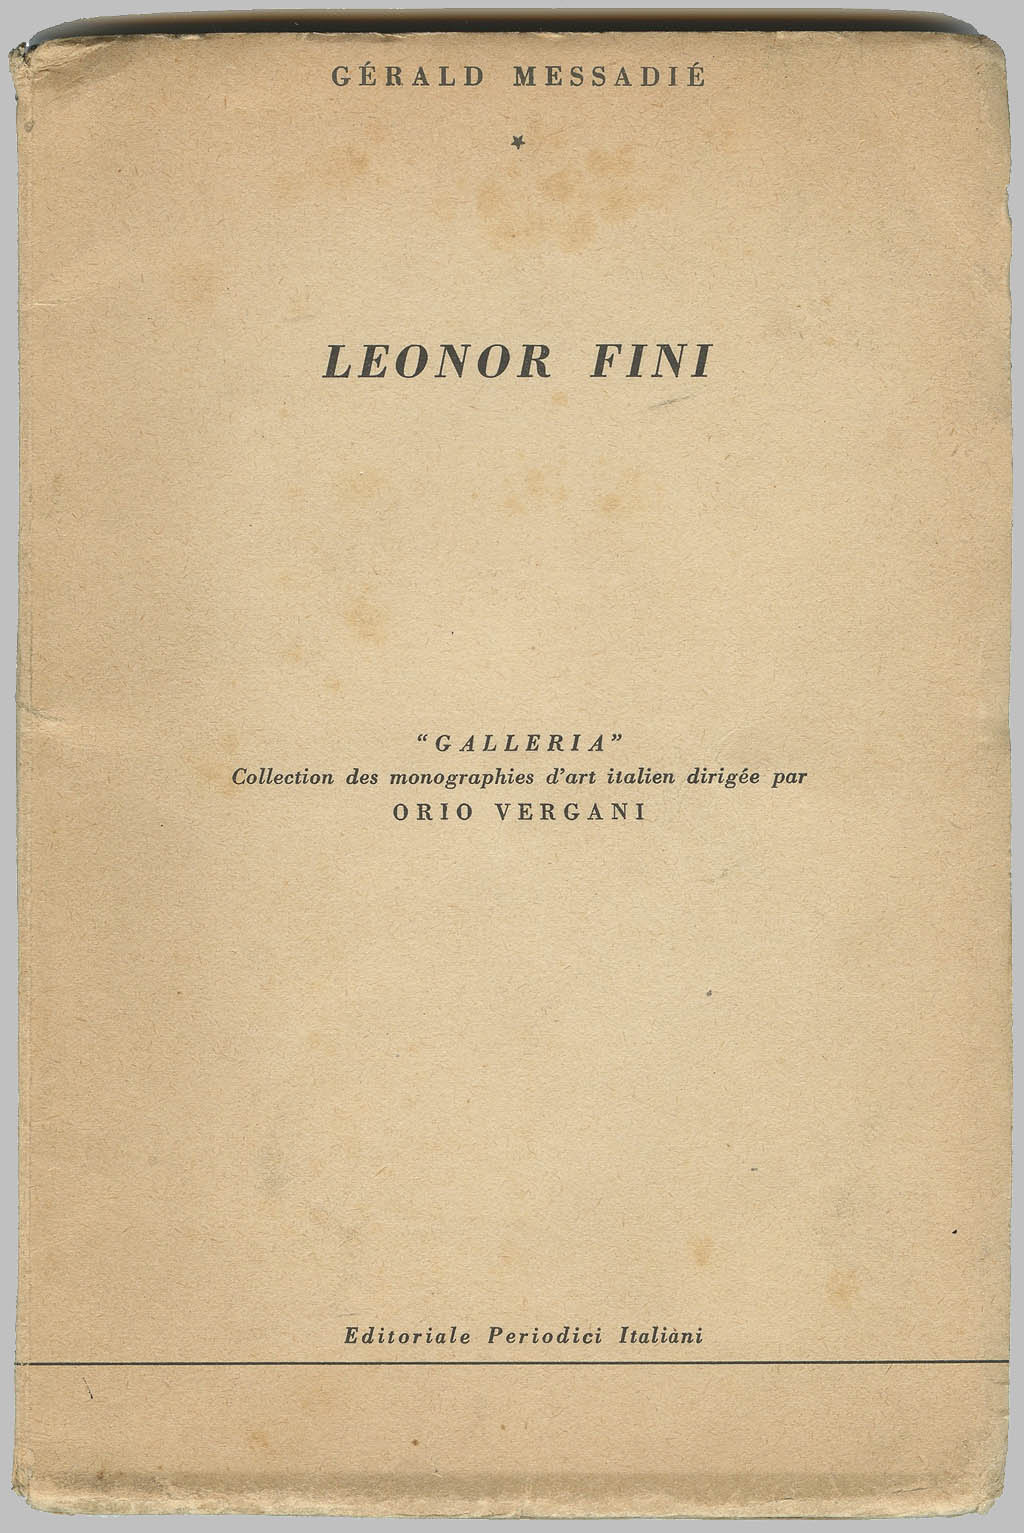 Leonor Fini - Galleria - 1951 Rare Hand Signed and Dedicated Monograph